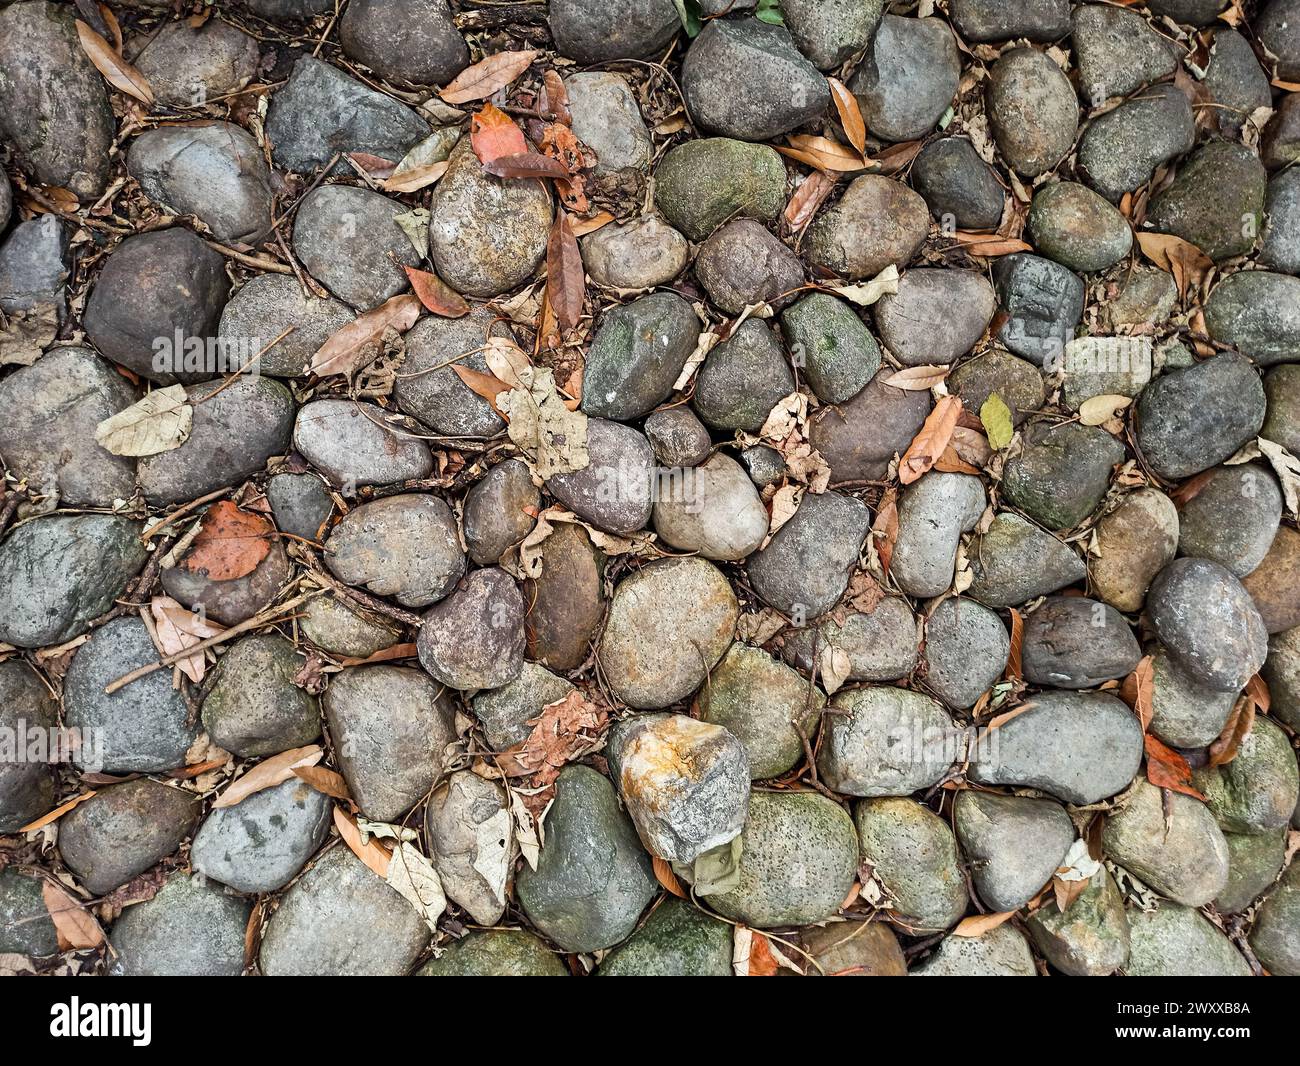 Die Bodenstruktur von abgerundeten Steinen, trockenen Blättern und Zweigen Stockfoto